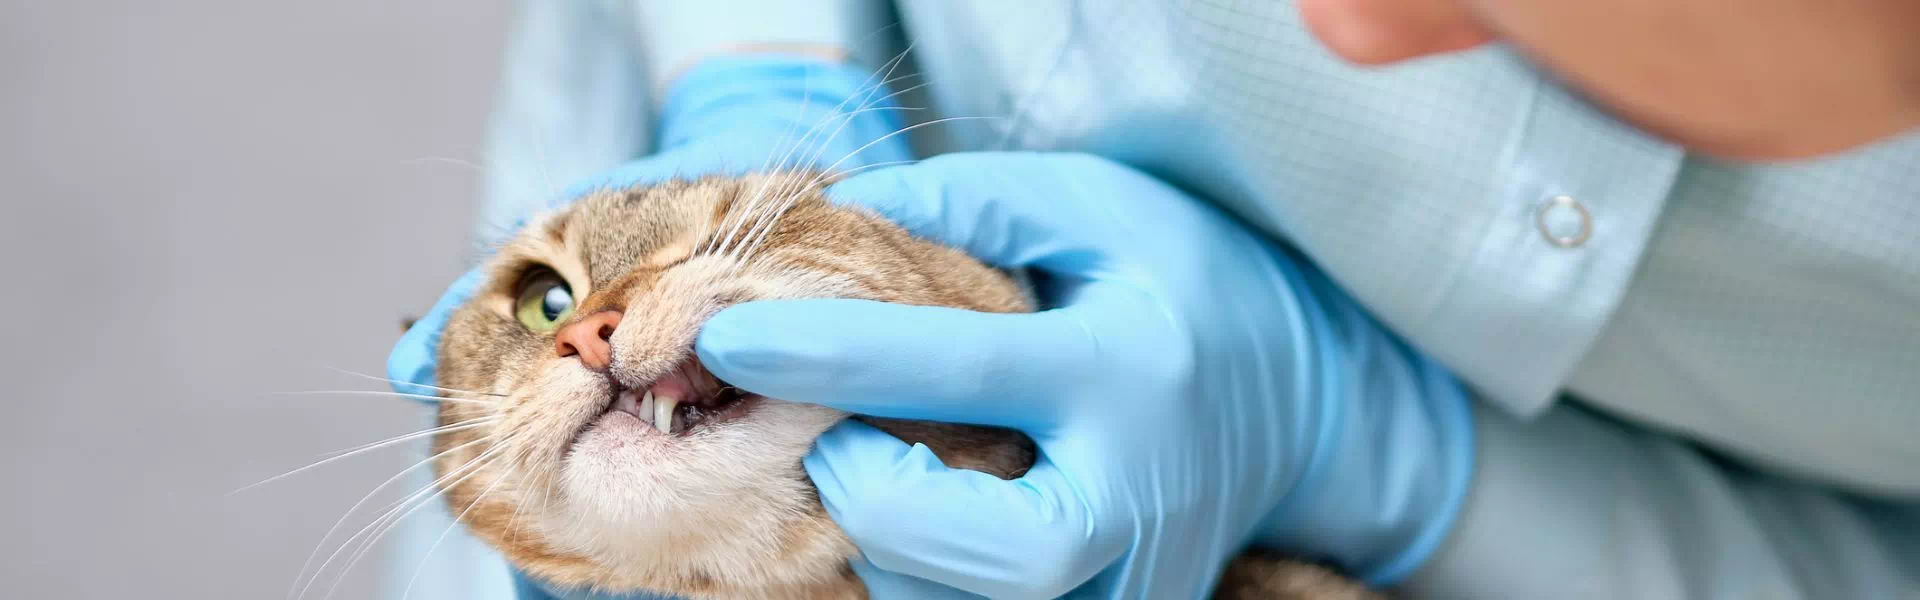 weterynarz sprawdzający uzębienie kota 